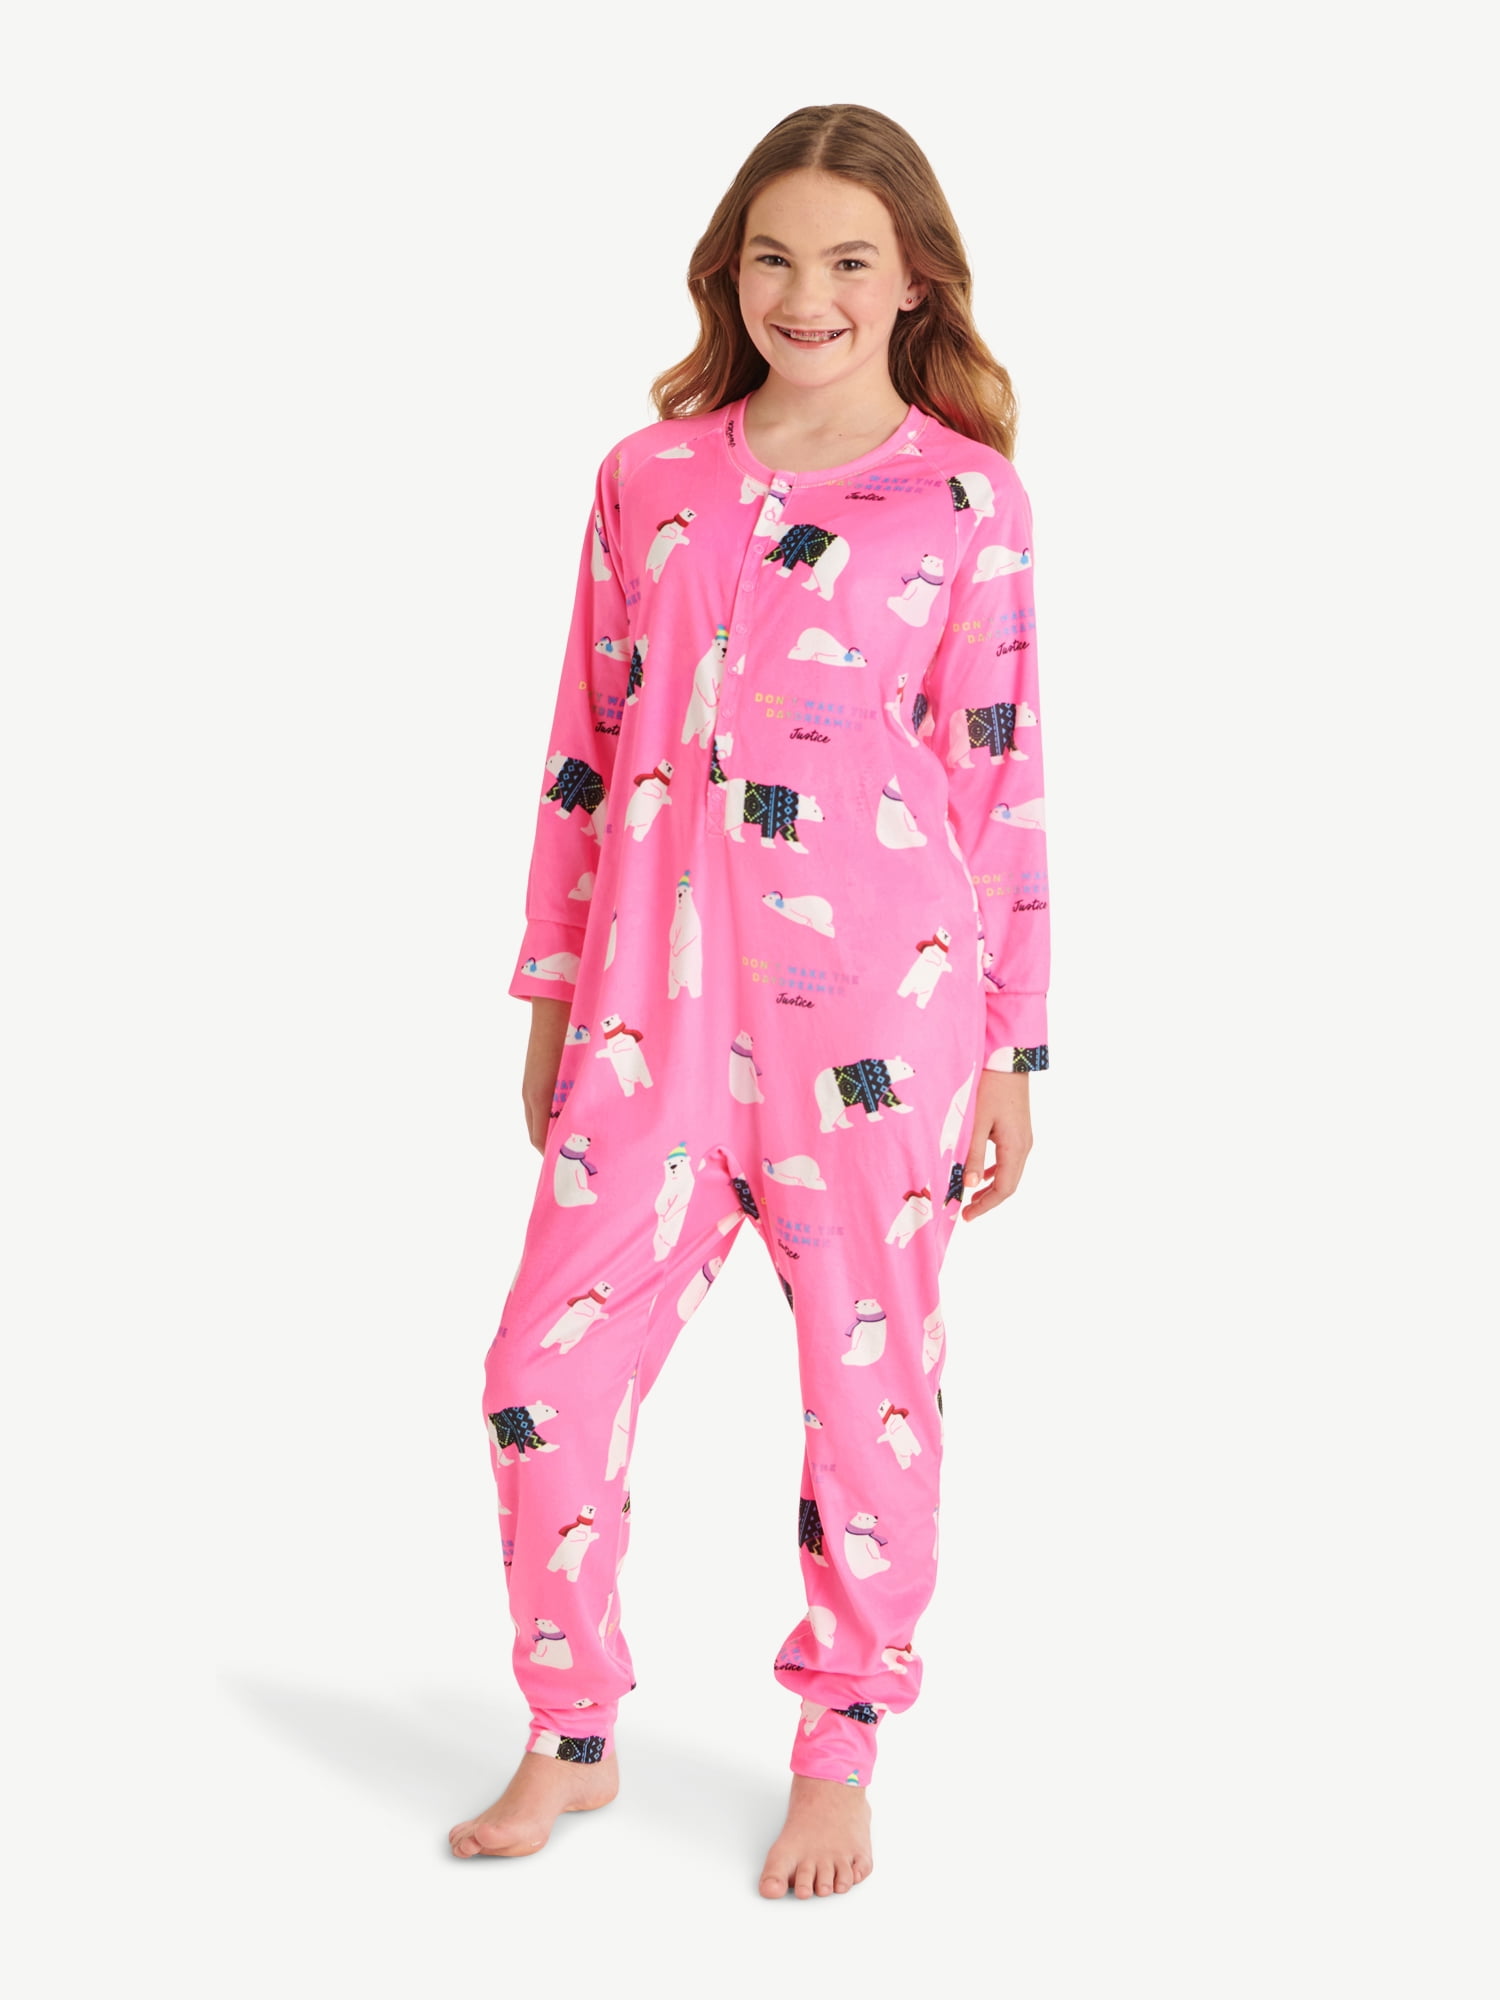 Justice Girls Button Front Onesie Sleepwear Pajama, Sizes 5-18 & Plus